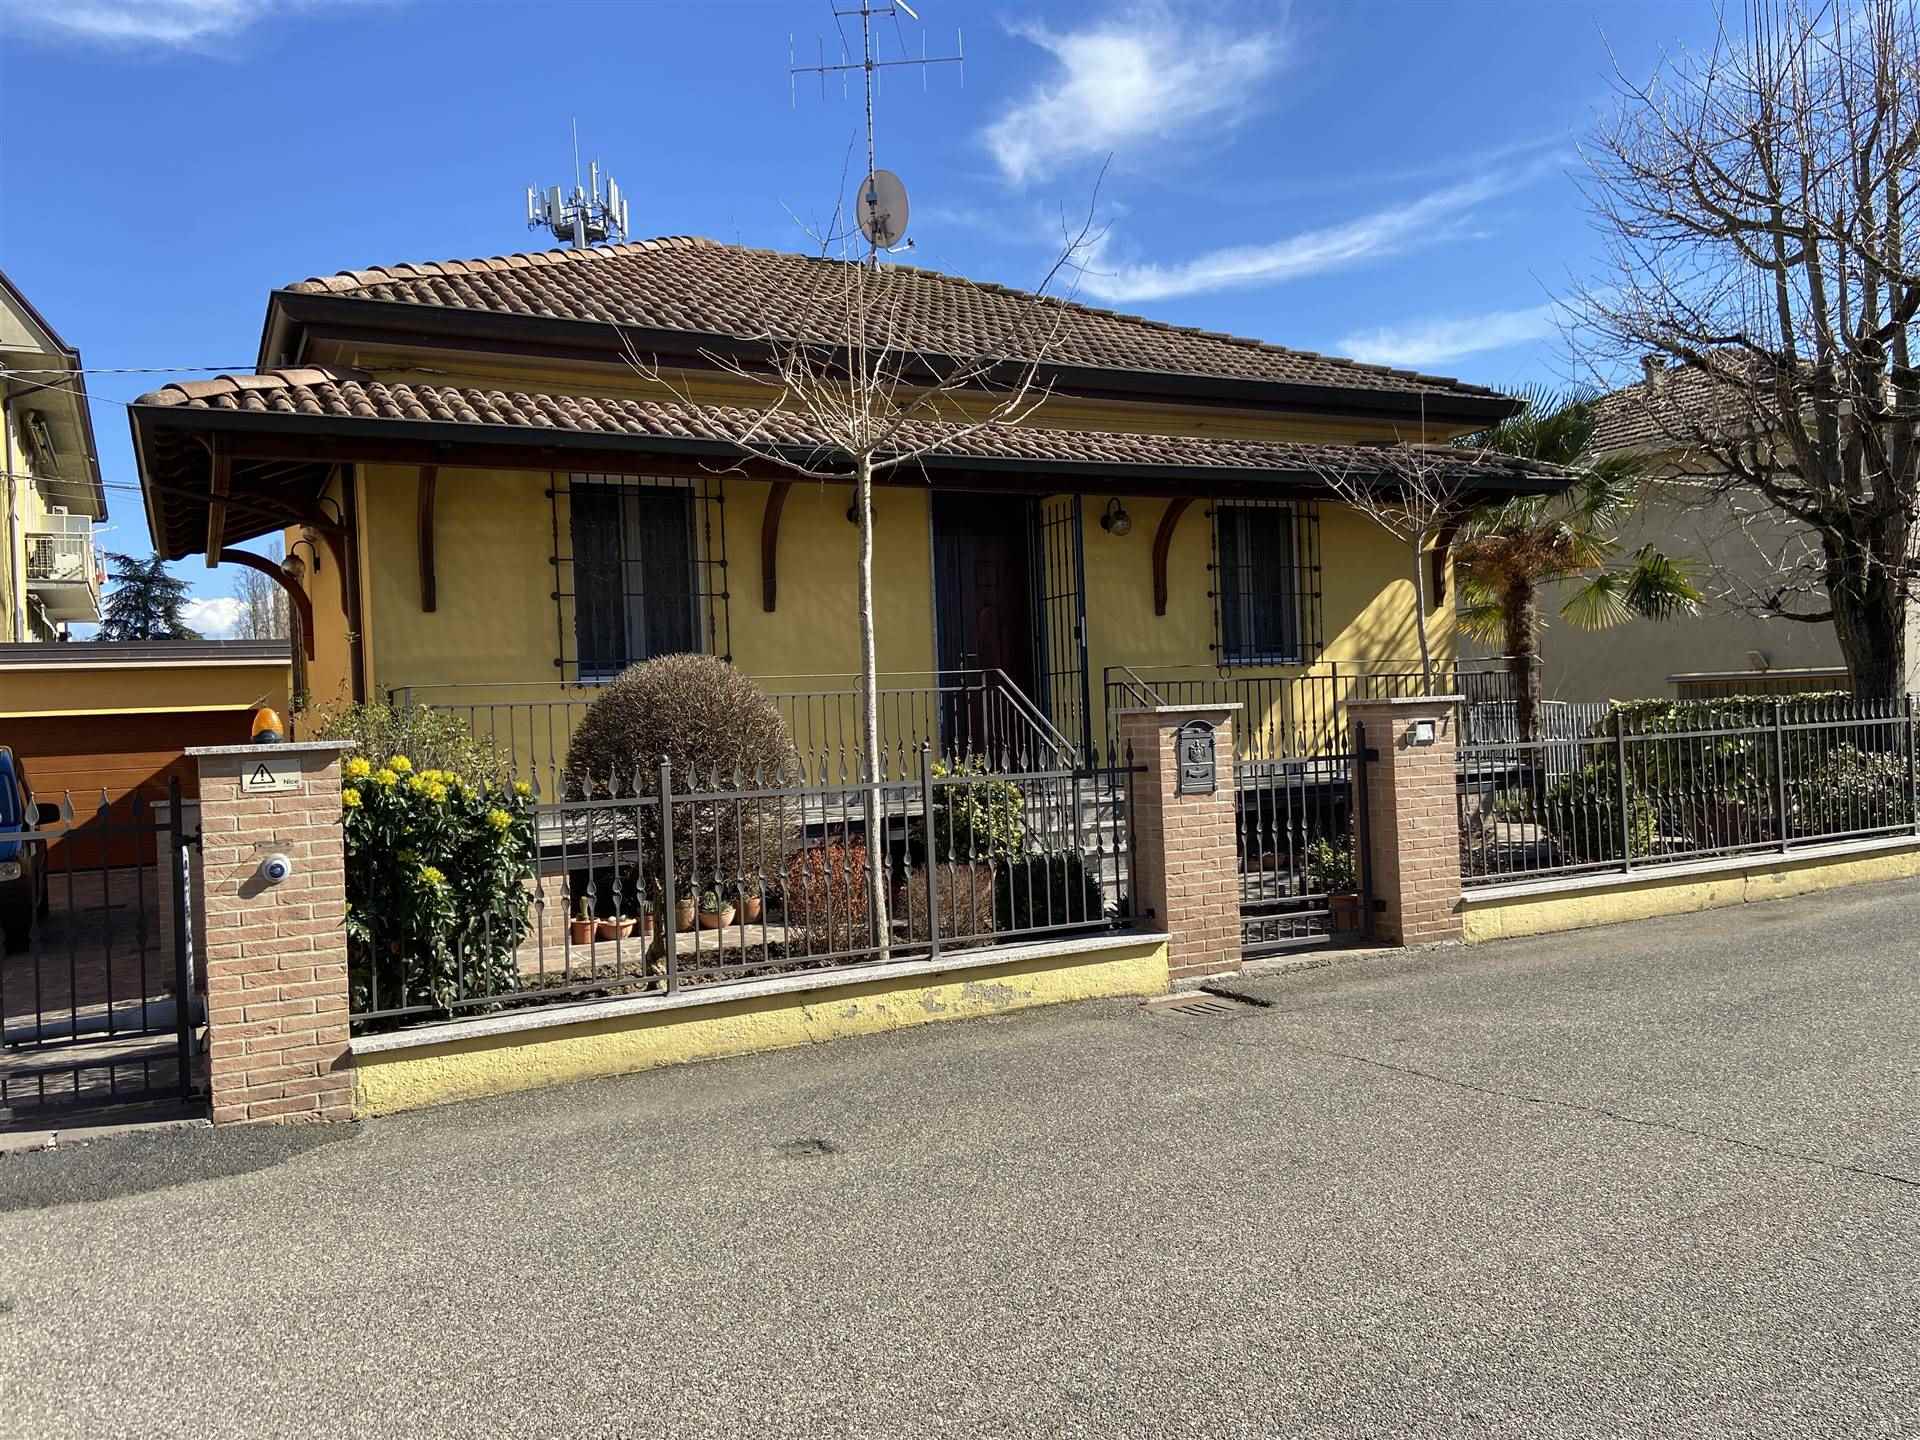 Villa in vendita a Pontenure, 5 locali, prezzo € 290.000 | PortaleAgenzieImmobiliari.it